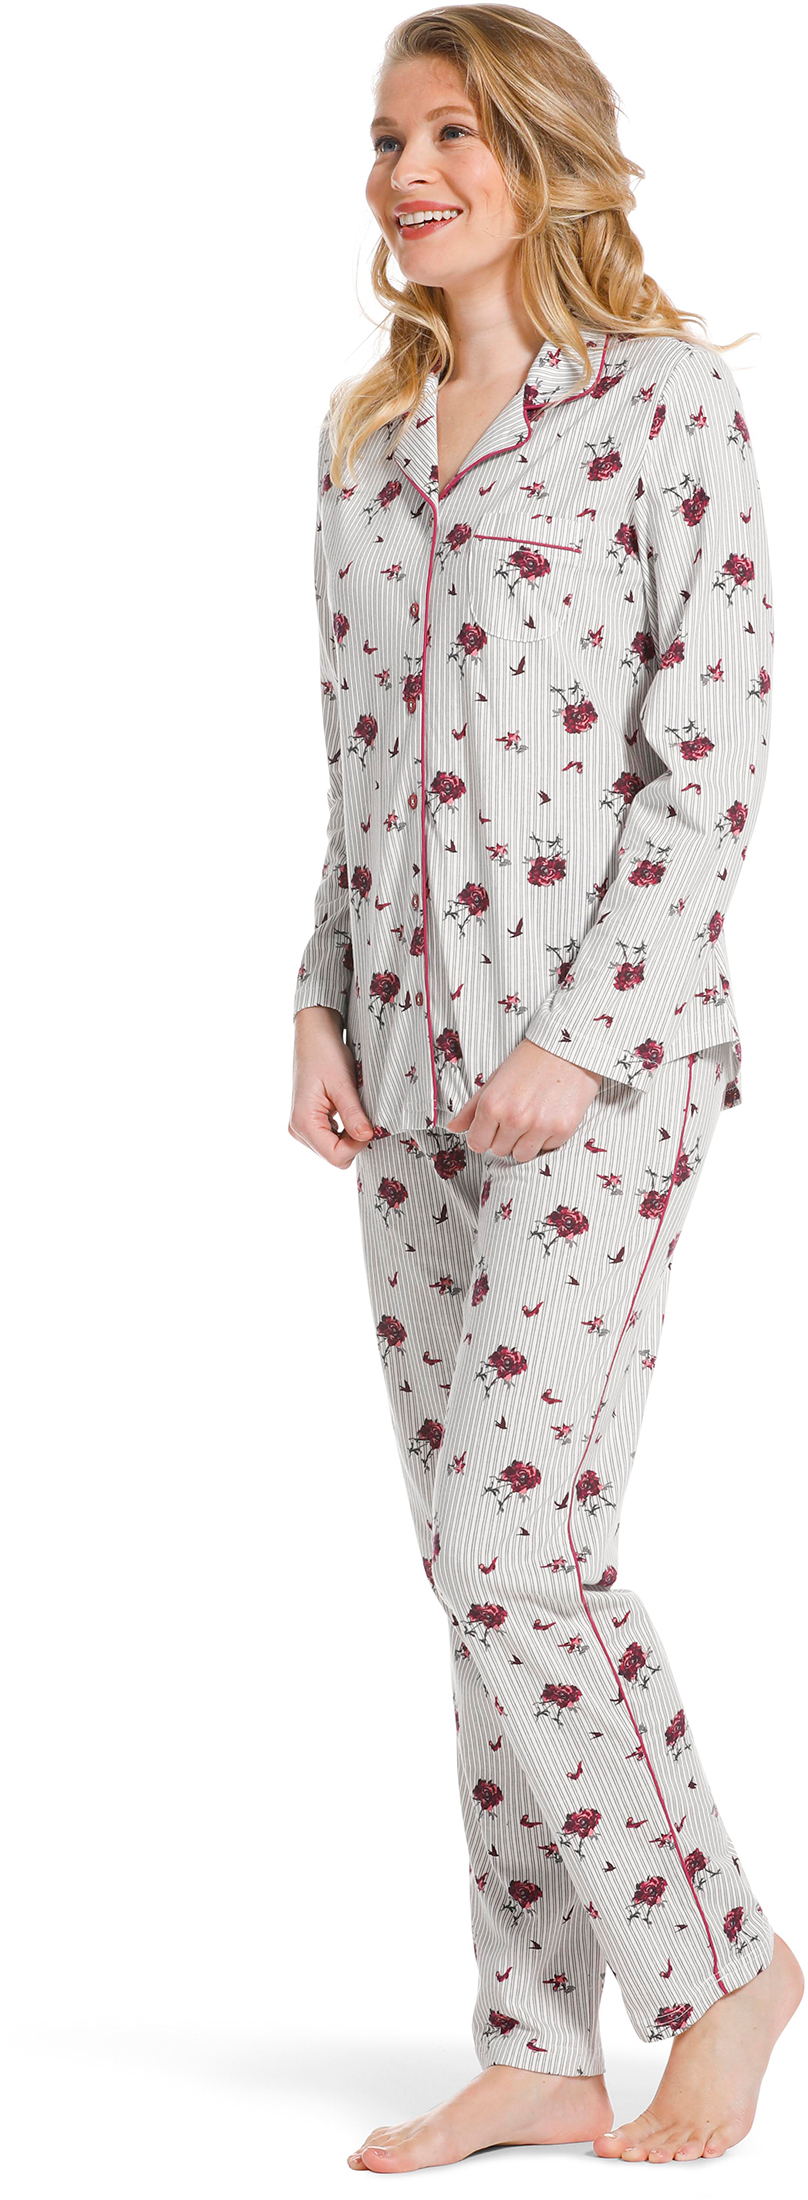 Pastunette doorknoop dames pyjama 20222-156-6-36